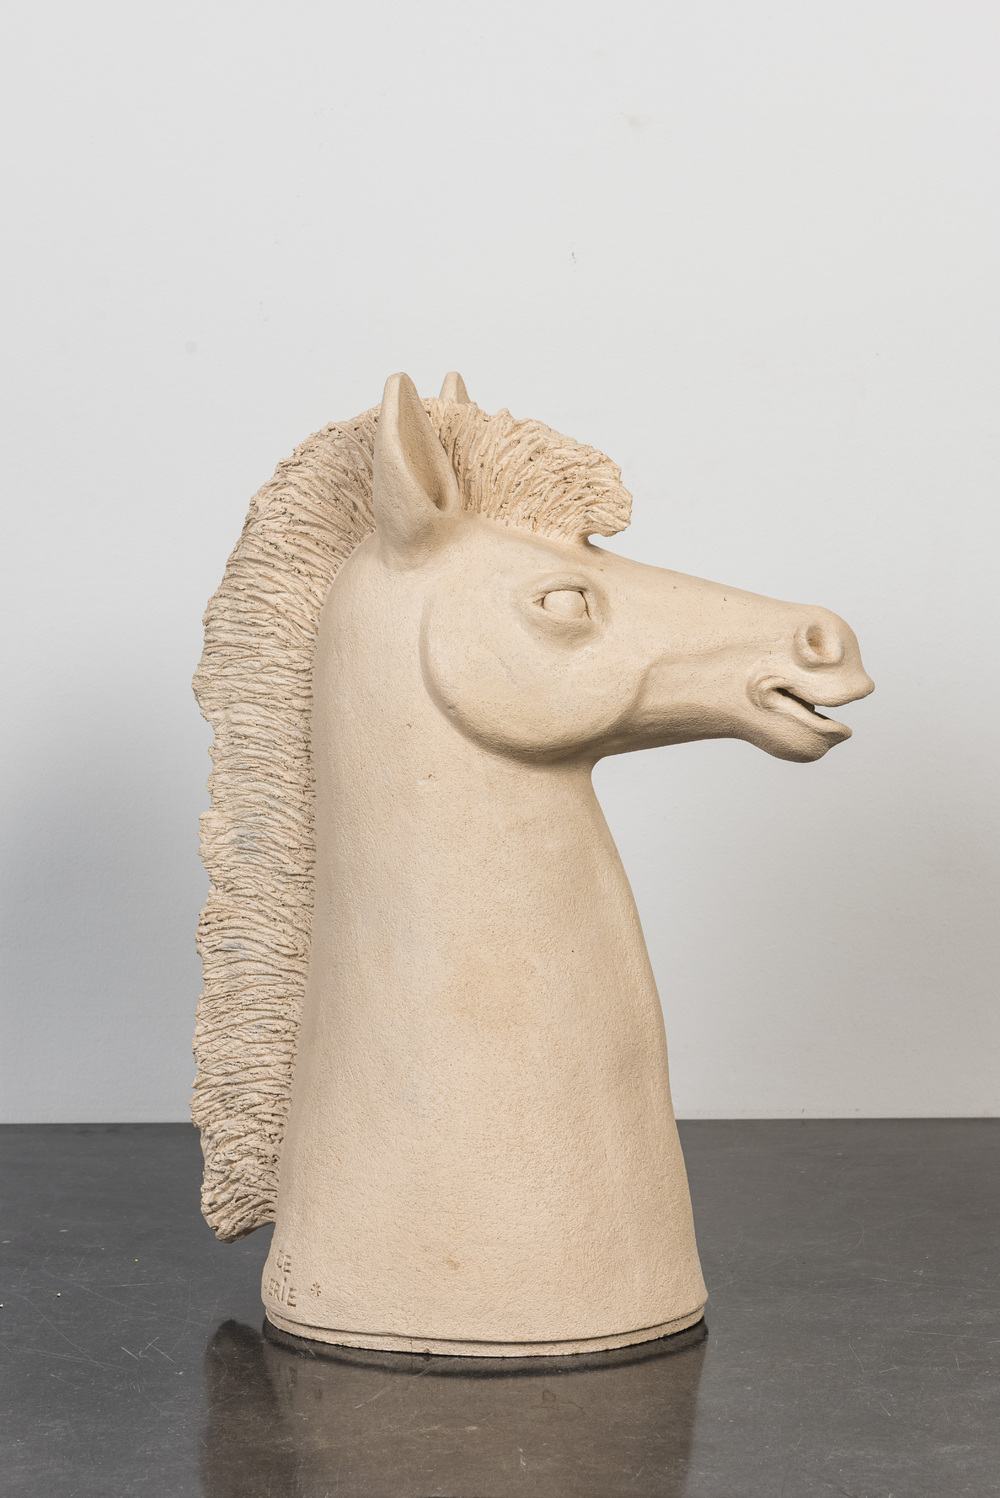 B&eacute;atrice Balguerie (20/21e eeuw): Hoofd van een paard, aardewerk